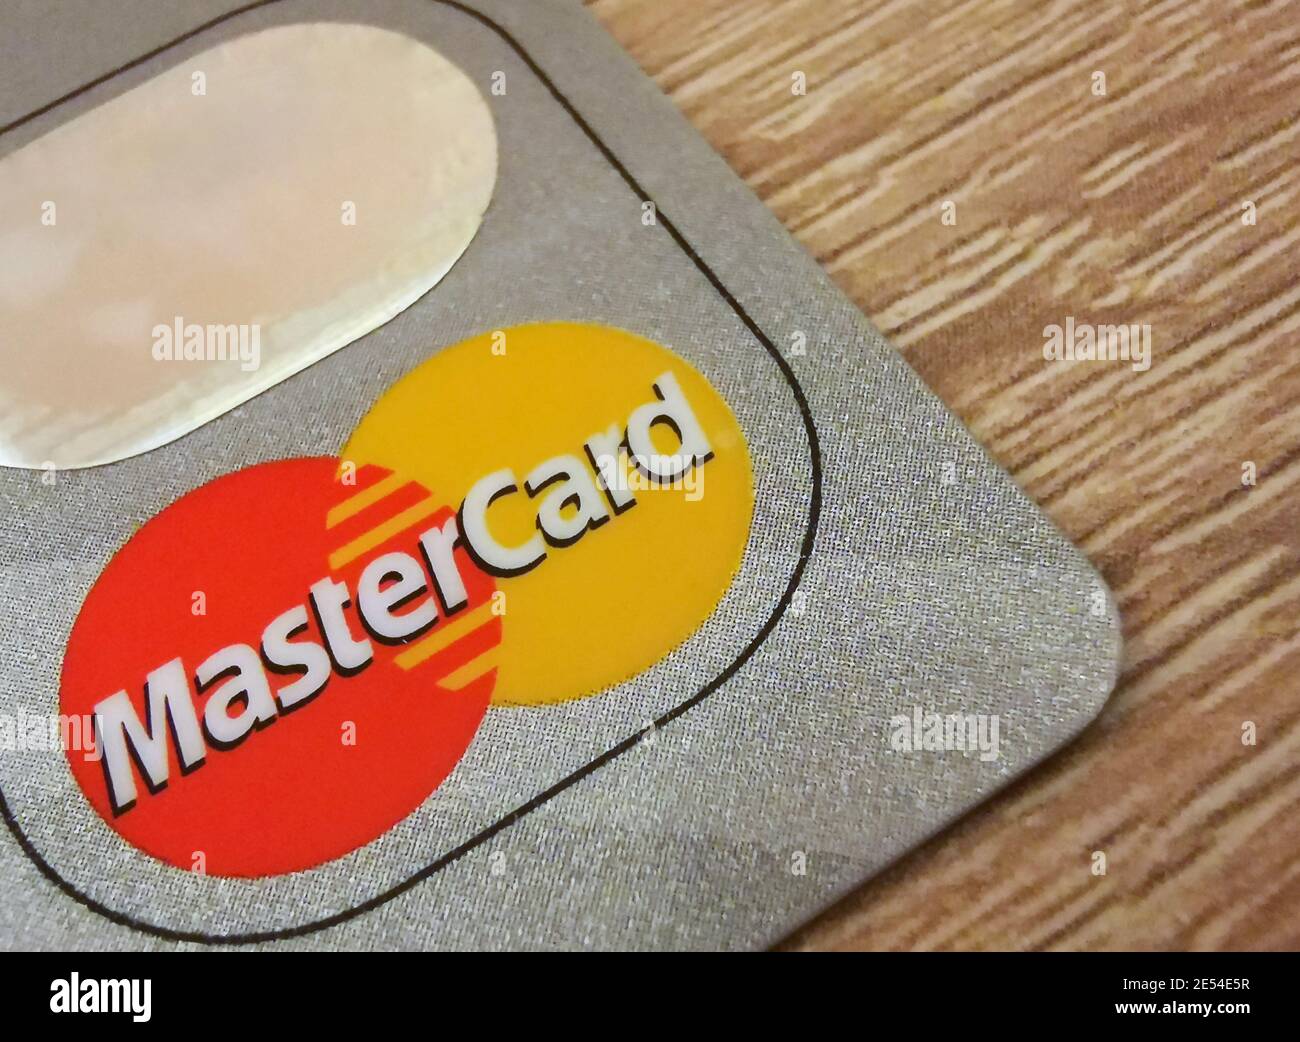 Eine Makroaufnahme einer Mastercard Kreditkarte. Mastercard ist eines der größten Kreditkartenunternehmen der Welt. 25.01.2021 Warschau, Polen Stockfoto